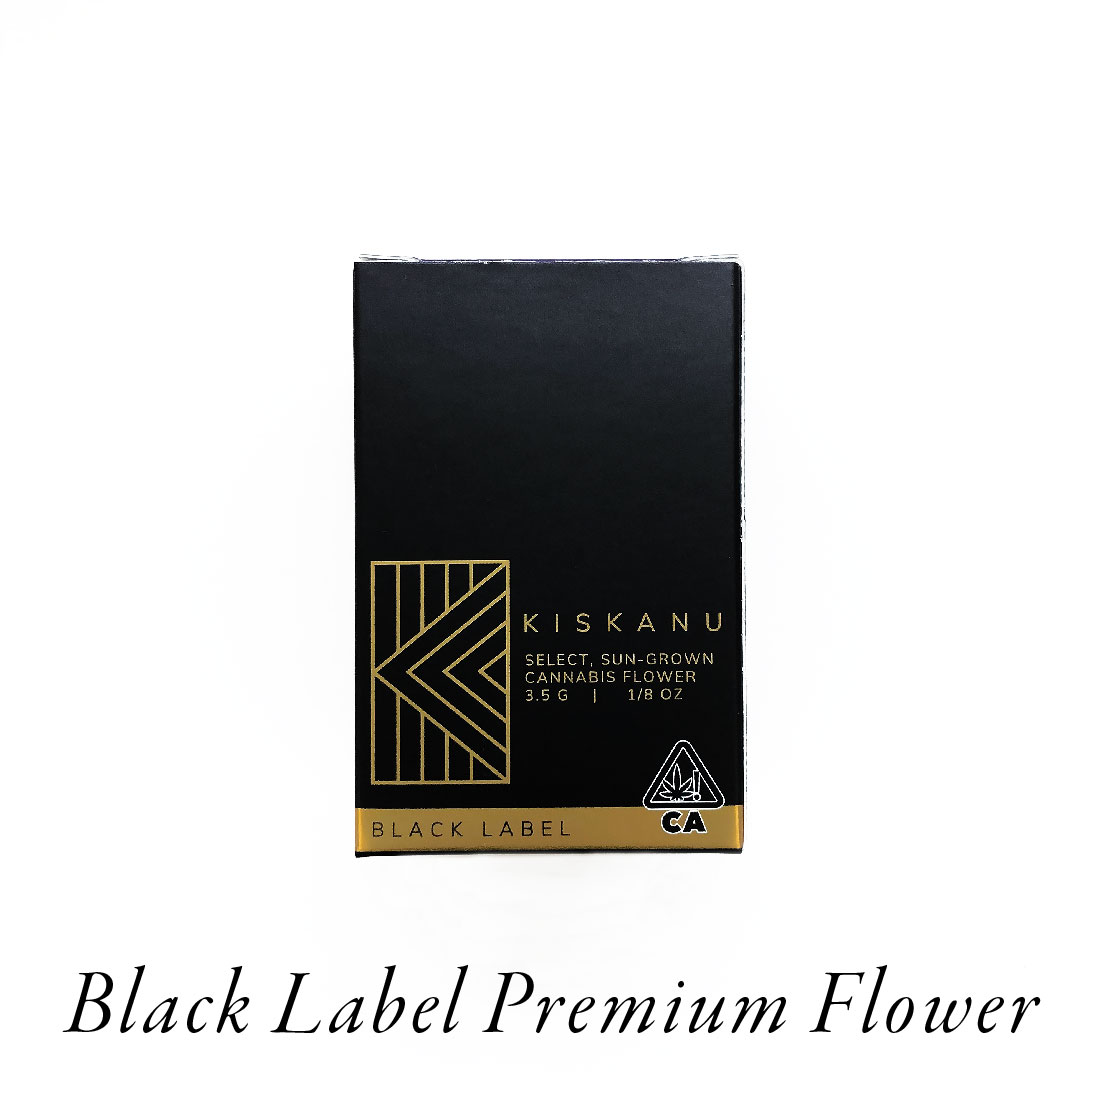 PRODUCT GRAPHIC - BLACK LABEL PREMIUM FLOWER